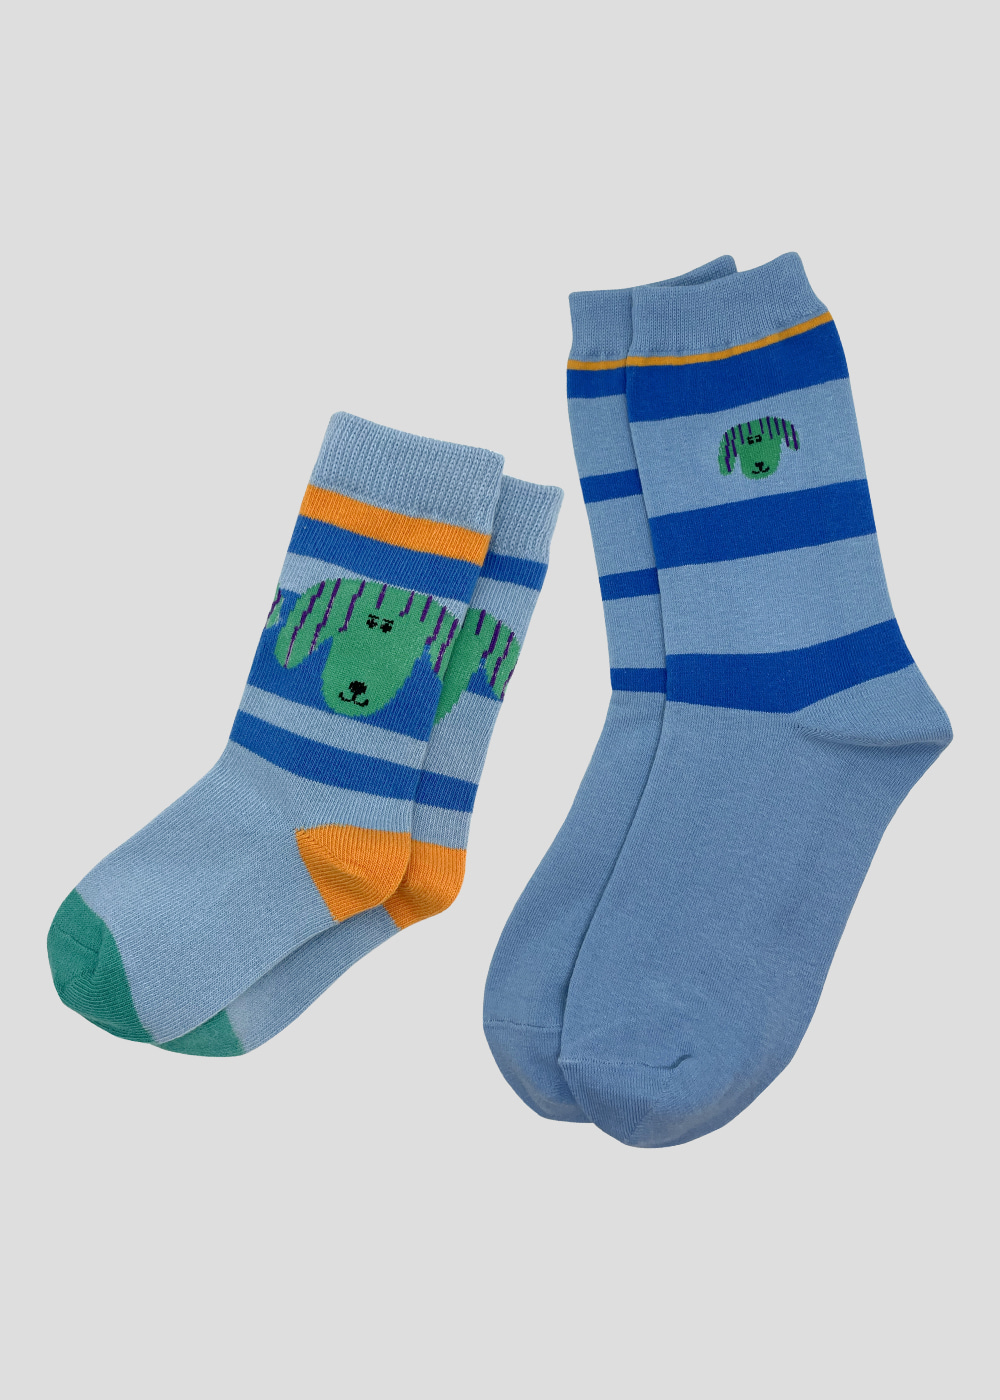 Family Socks - Green Dog (Blue)